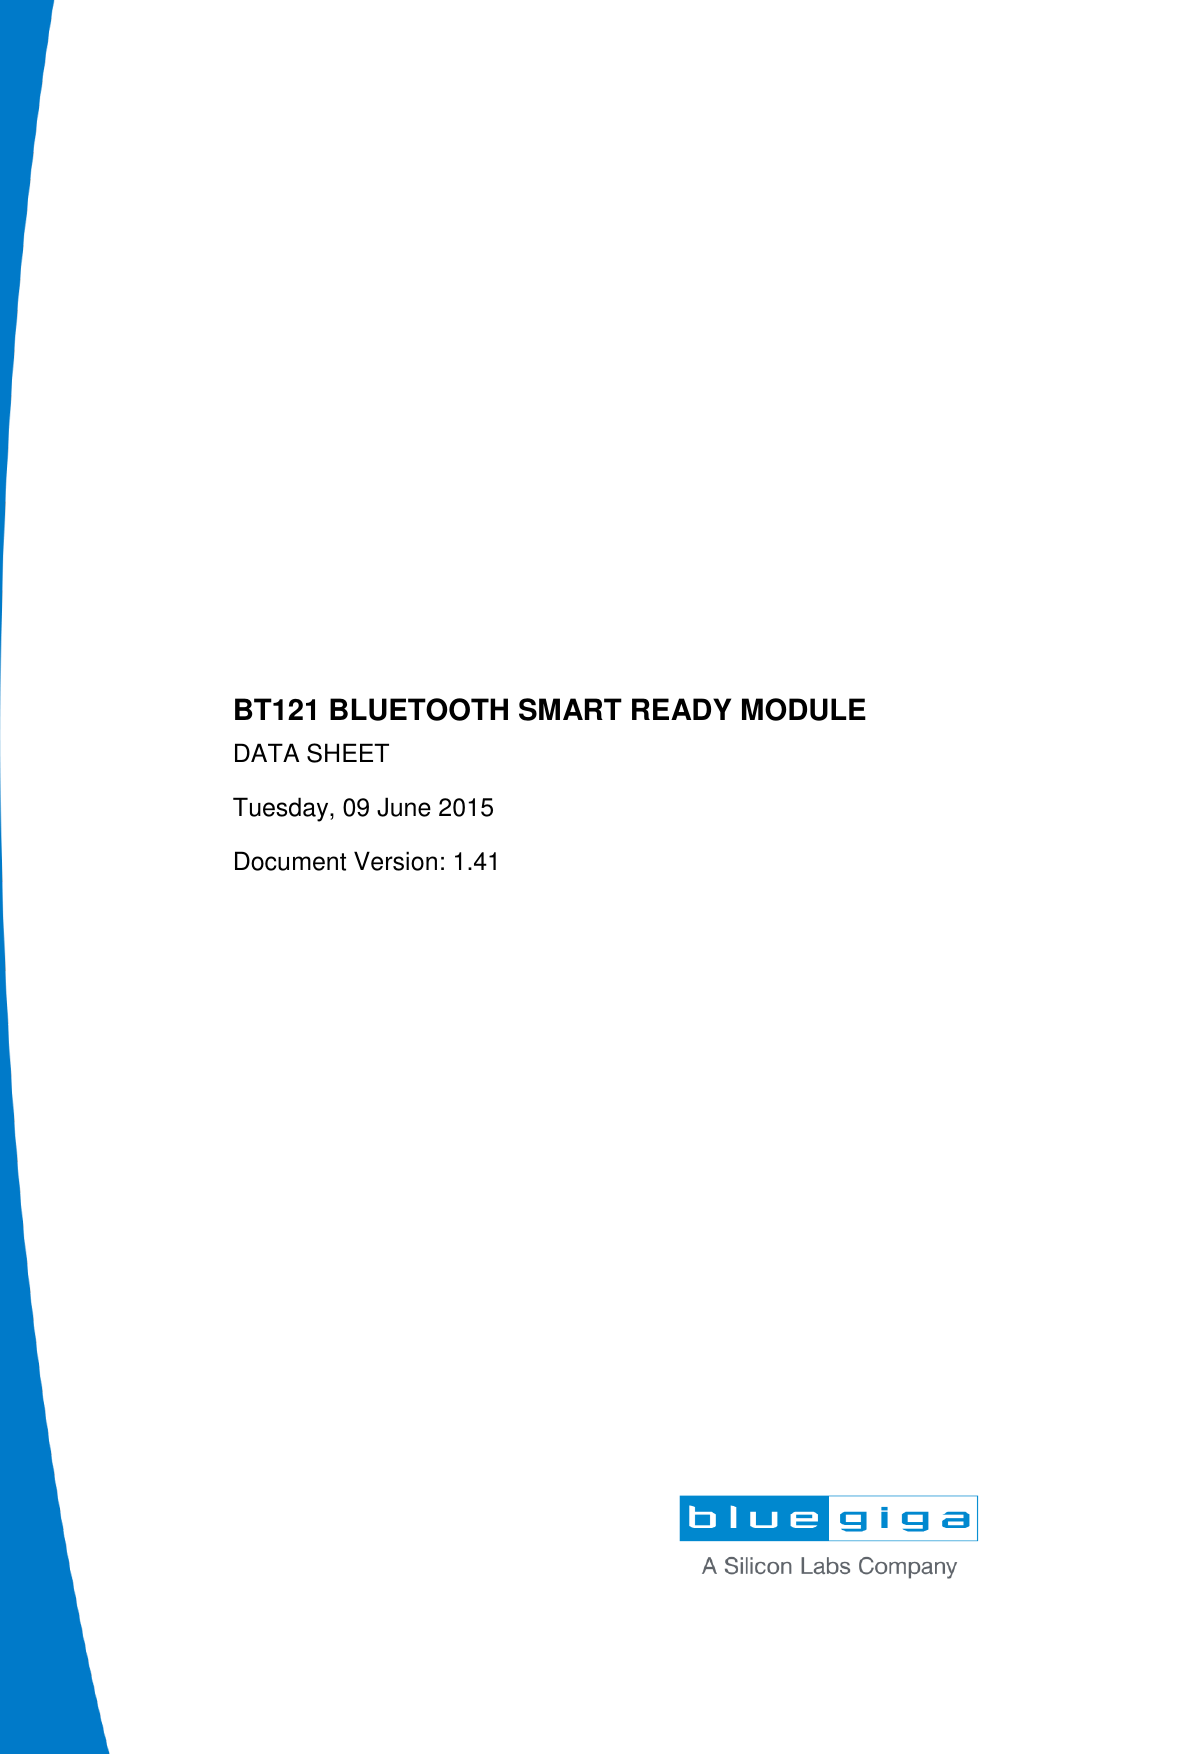                        BT121 BLUETOOTH SMART READY MODULE DATA SHEET Tuesday, 09 June 2015 Document Version: 1.41   